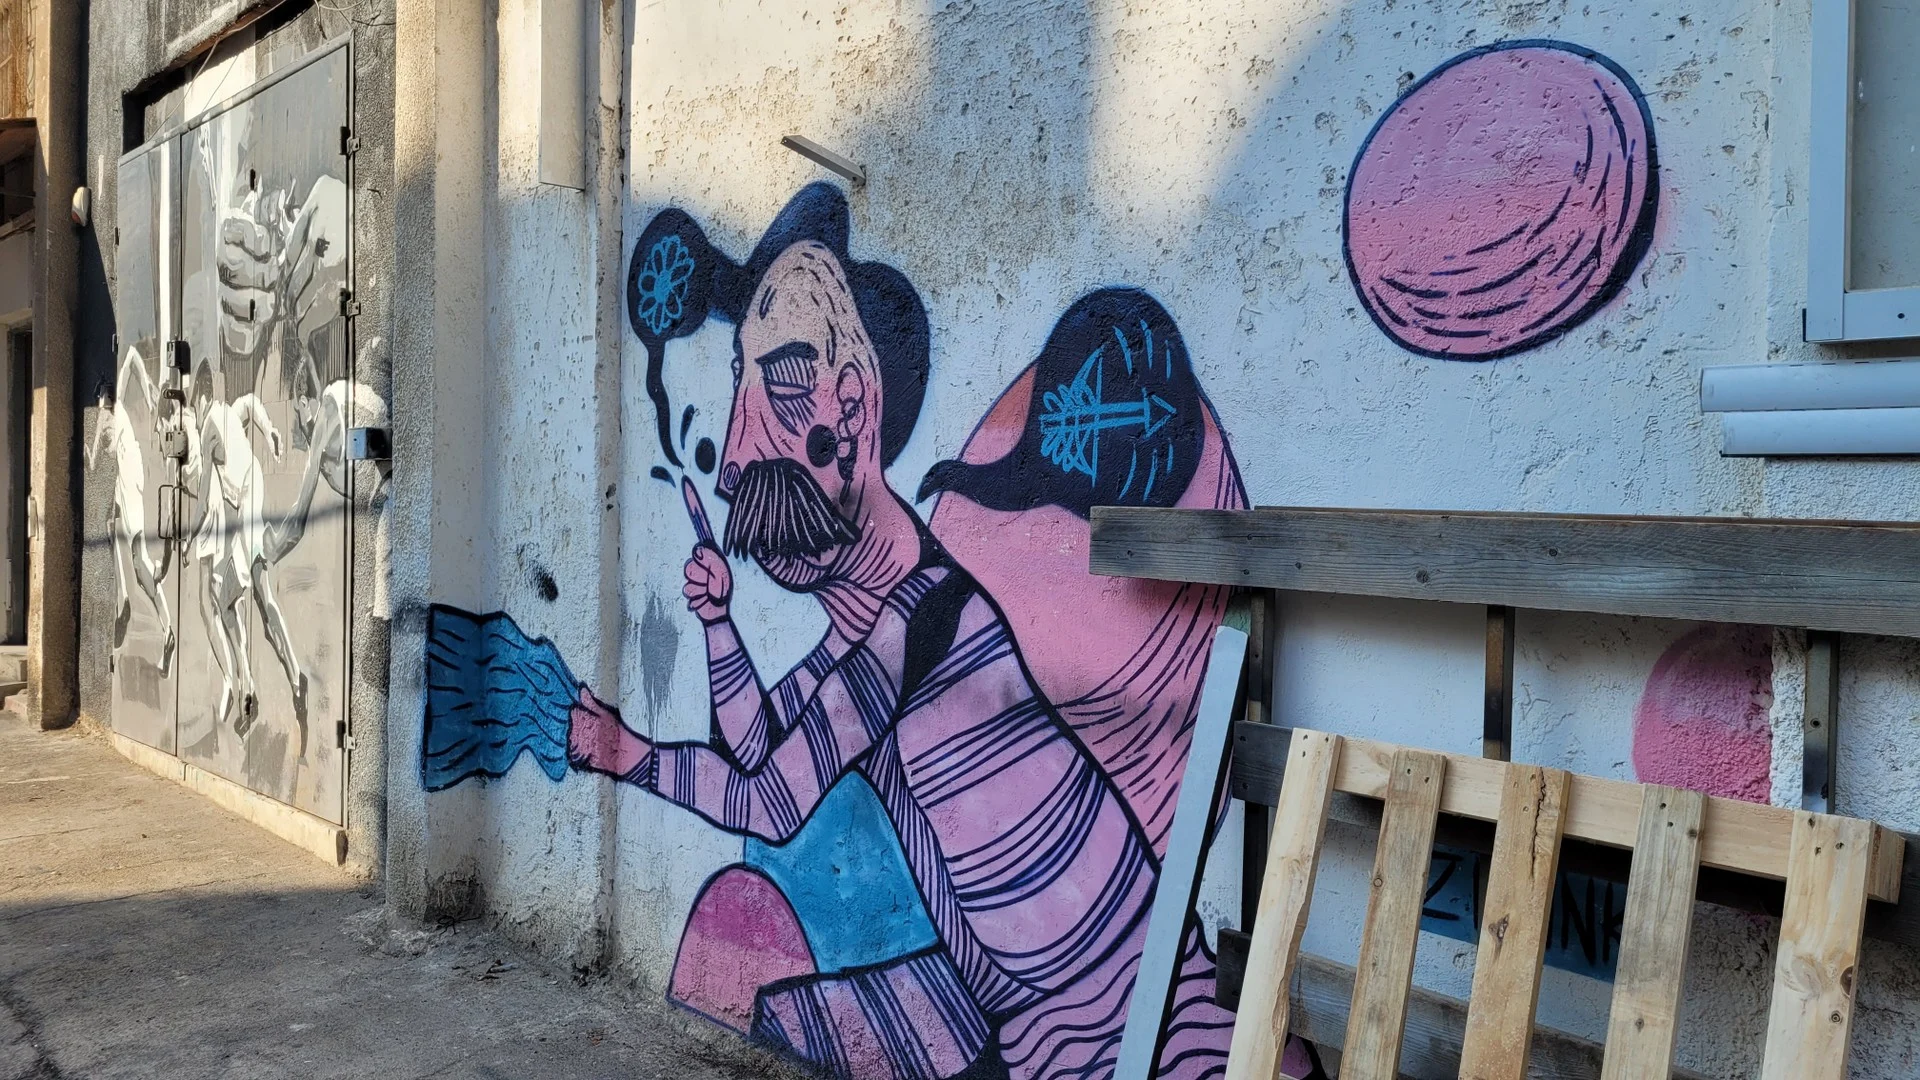 אמנות רחוב בחיפה